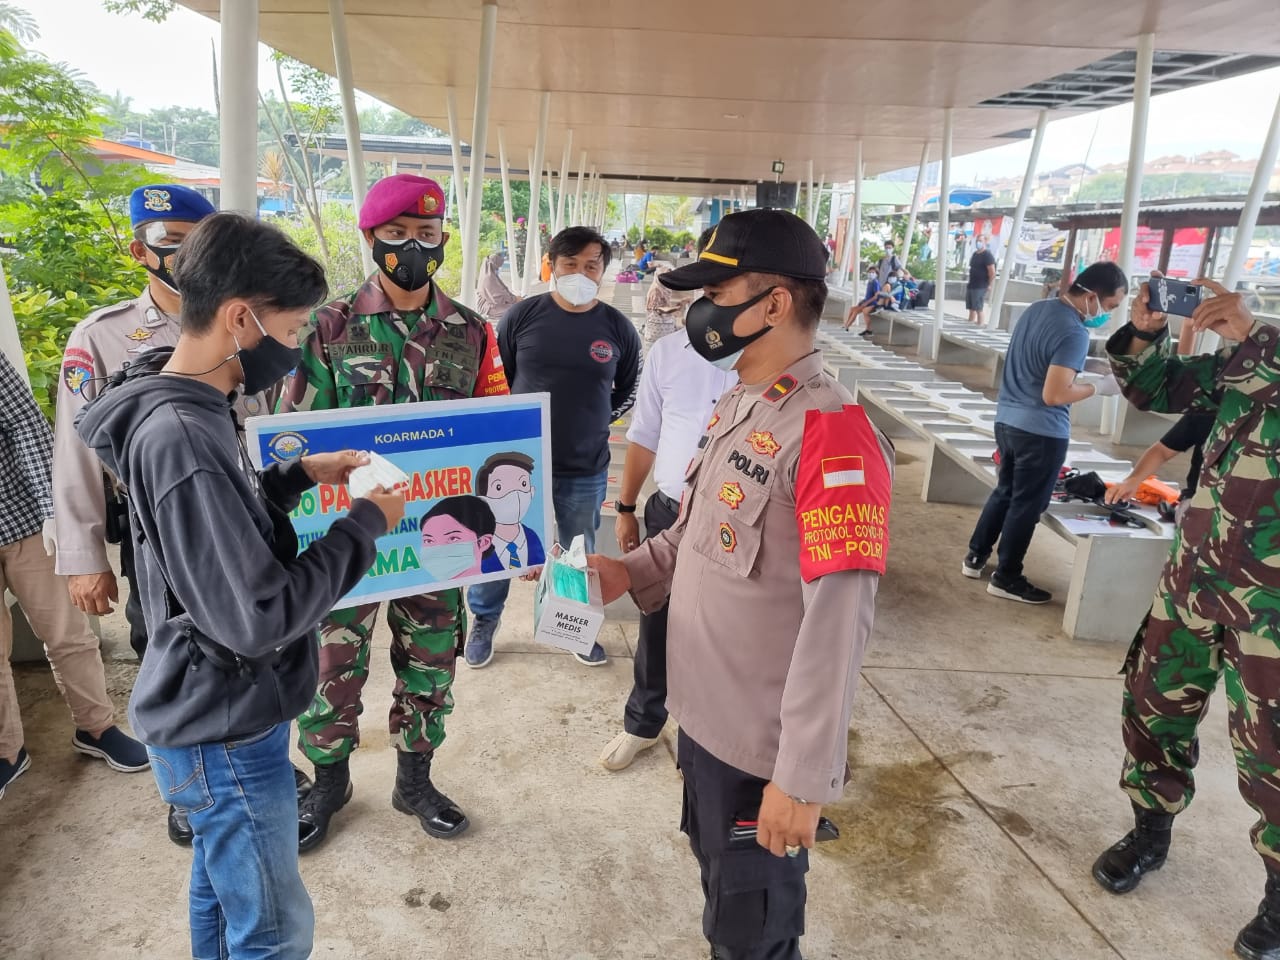 Dukung Program "Jakarta Bermasker", Polres Kepulauan Seribu Bagikan 4.400 Masker Gratis